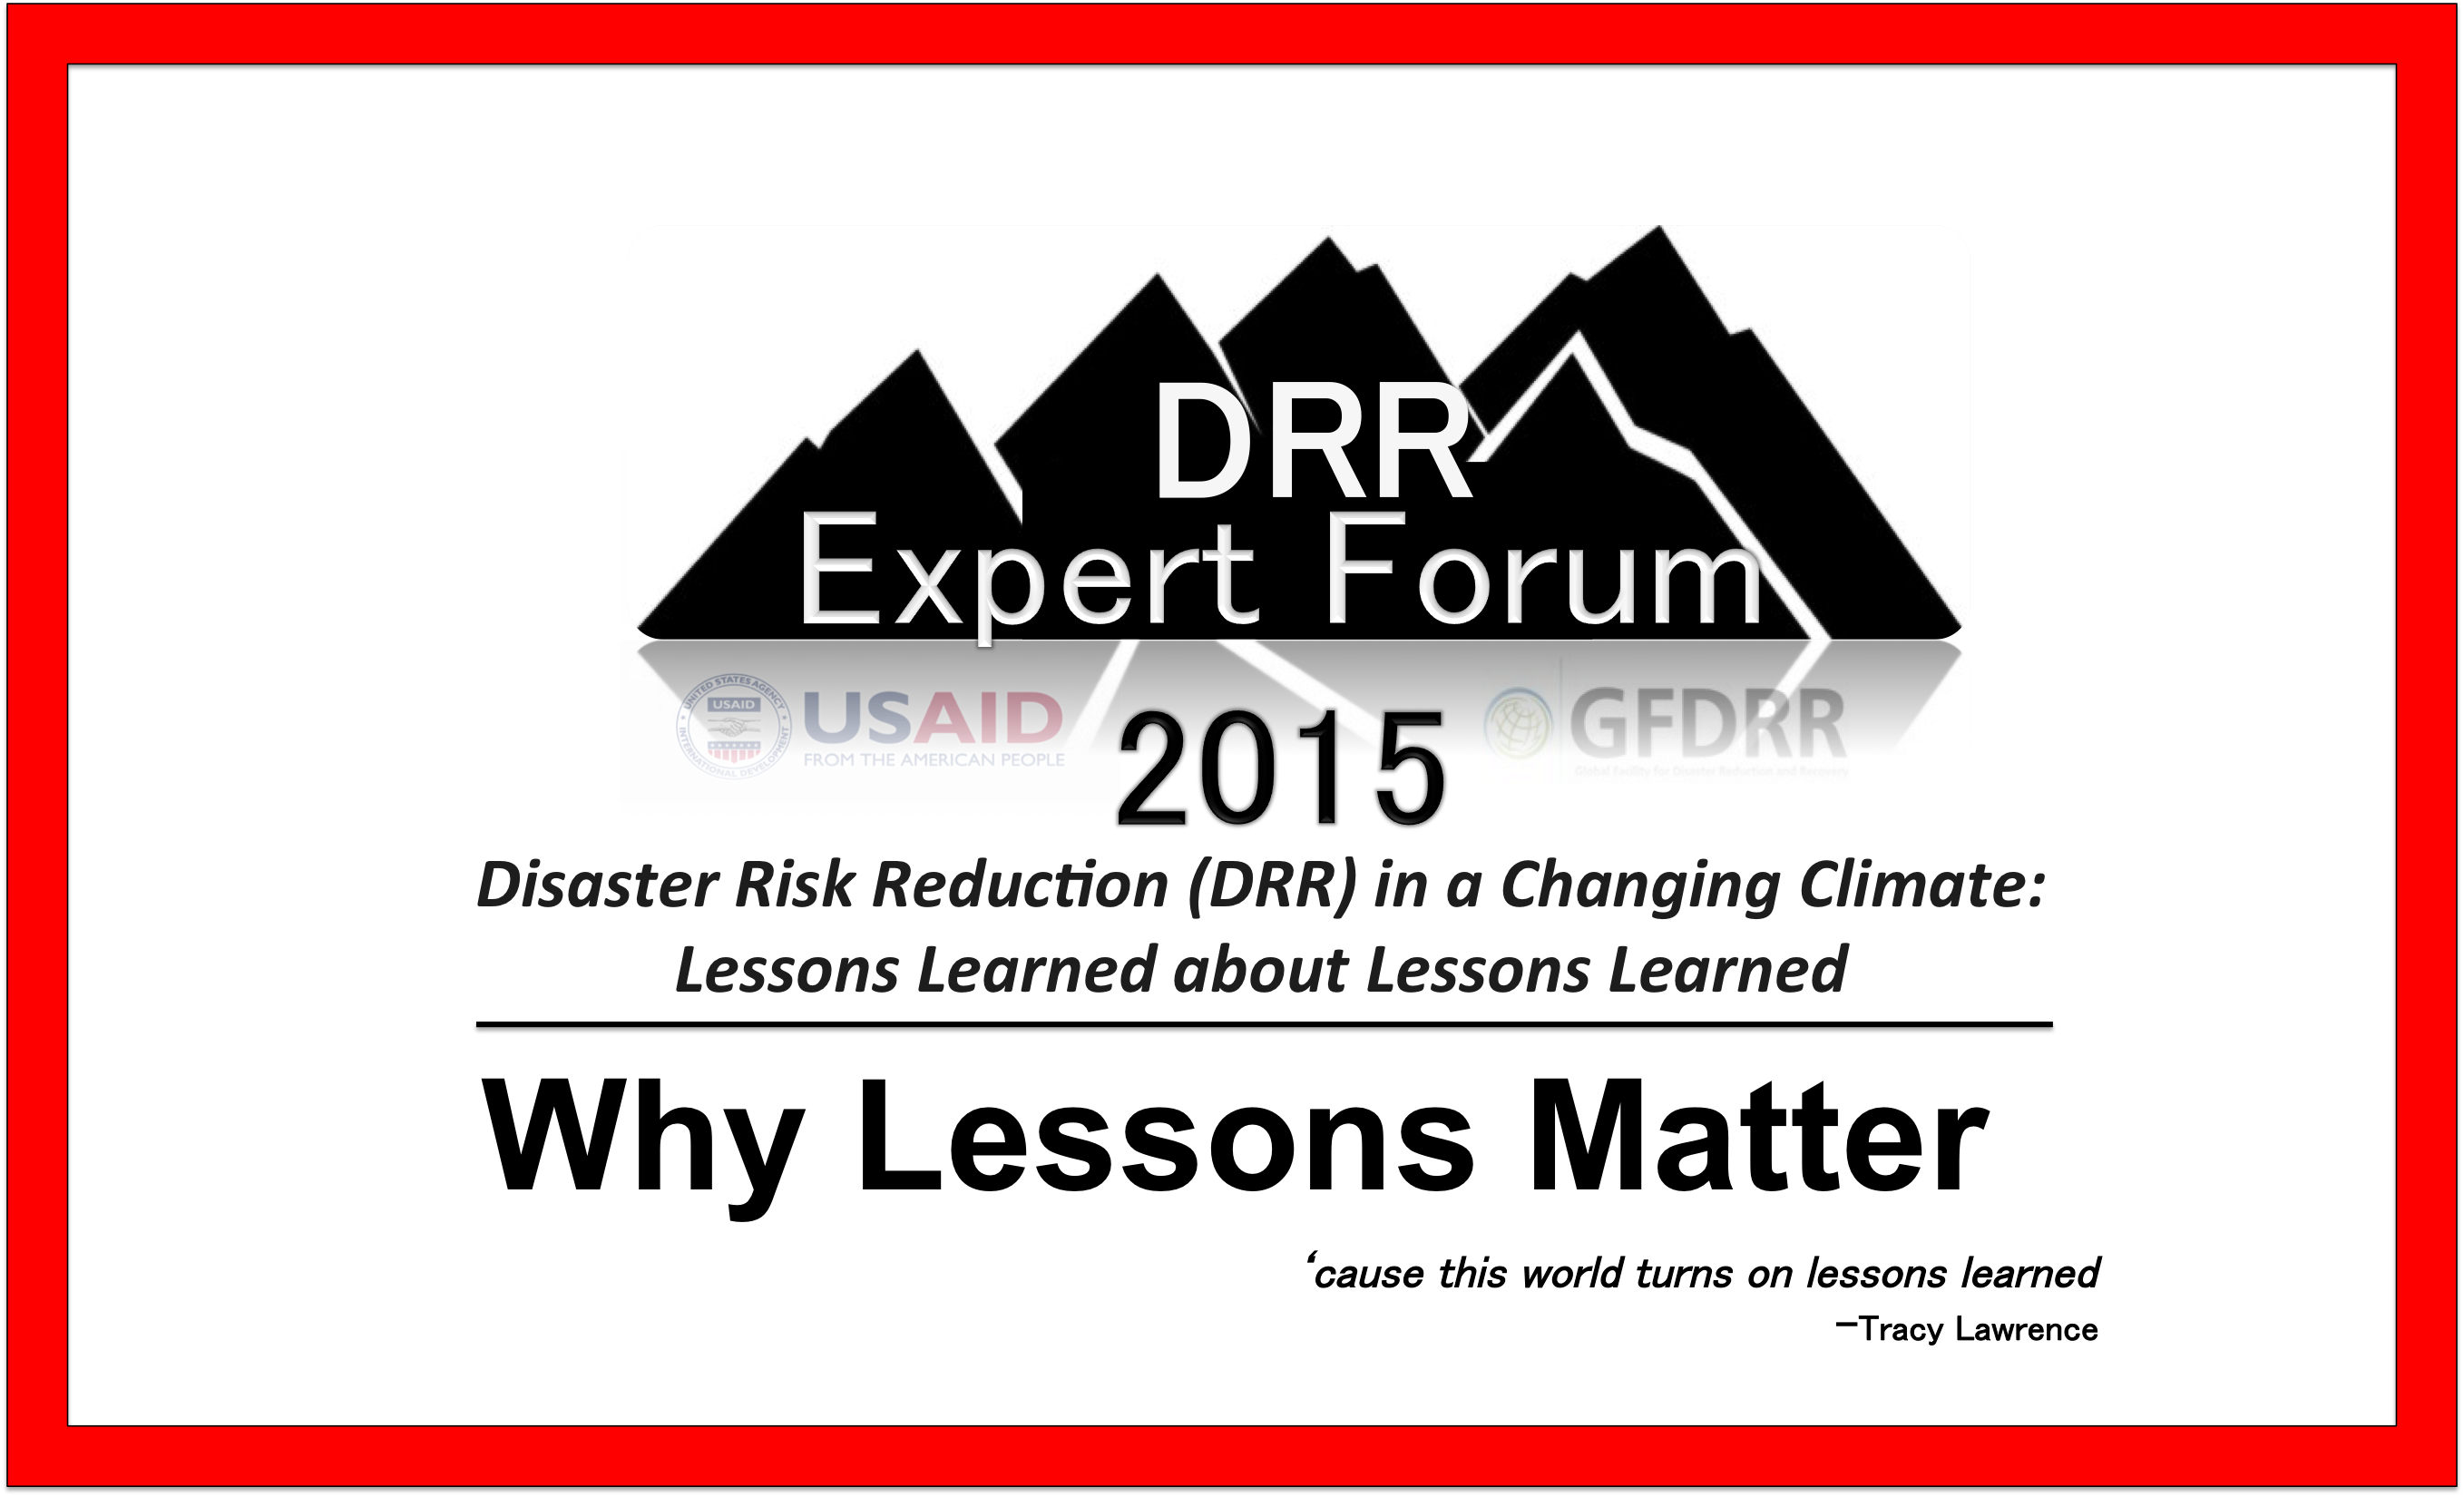 DDR Expert Forum 2015